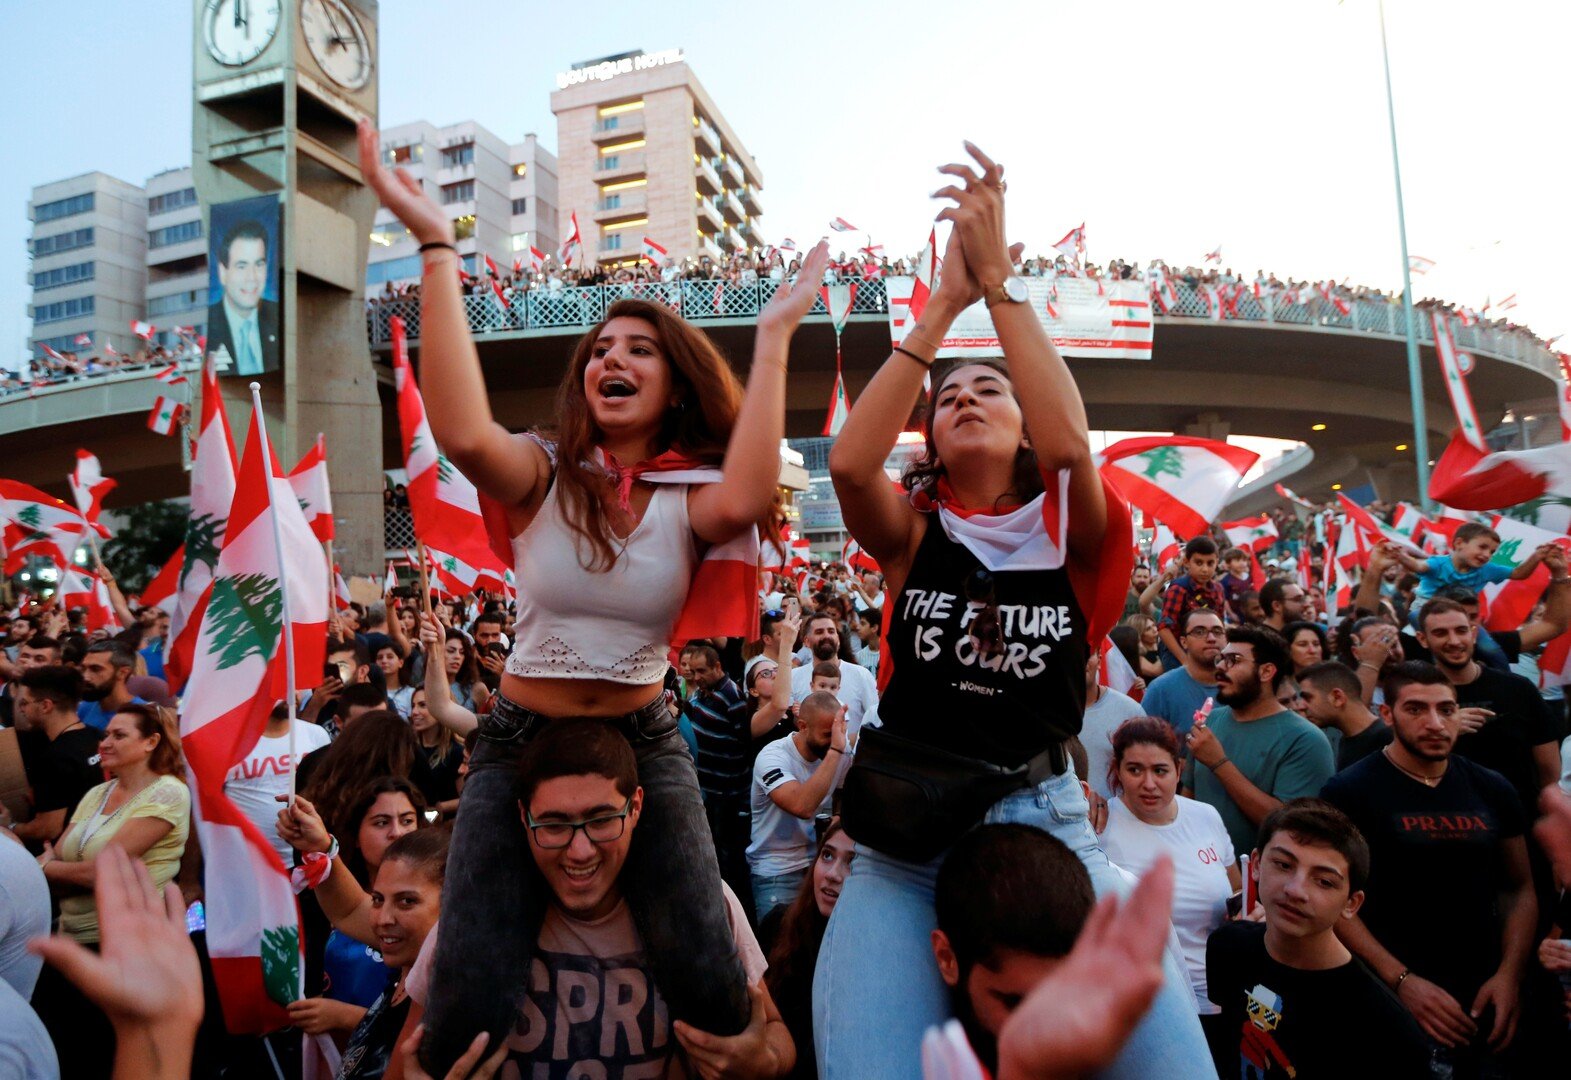 خبير اقتصادي لبناني: الحكومة اللبنانية تشتري الوقت بإجراءات ستعمق الأزمة